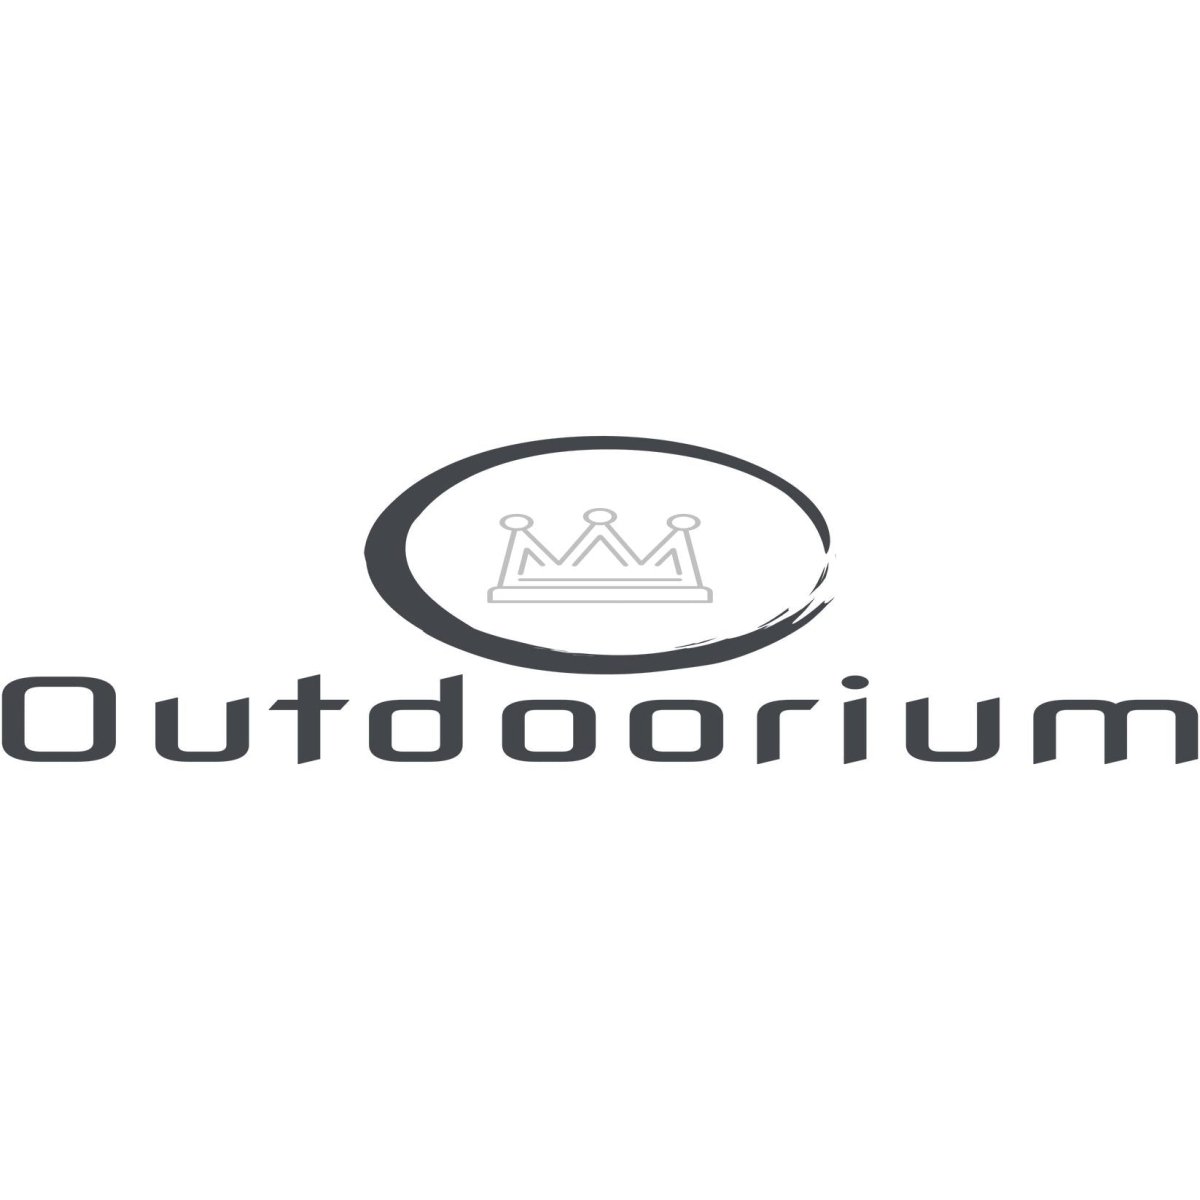 Outdoorium Gift Cards - Outdoorium